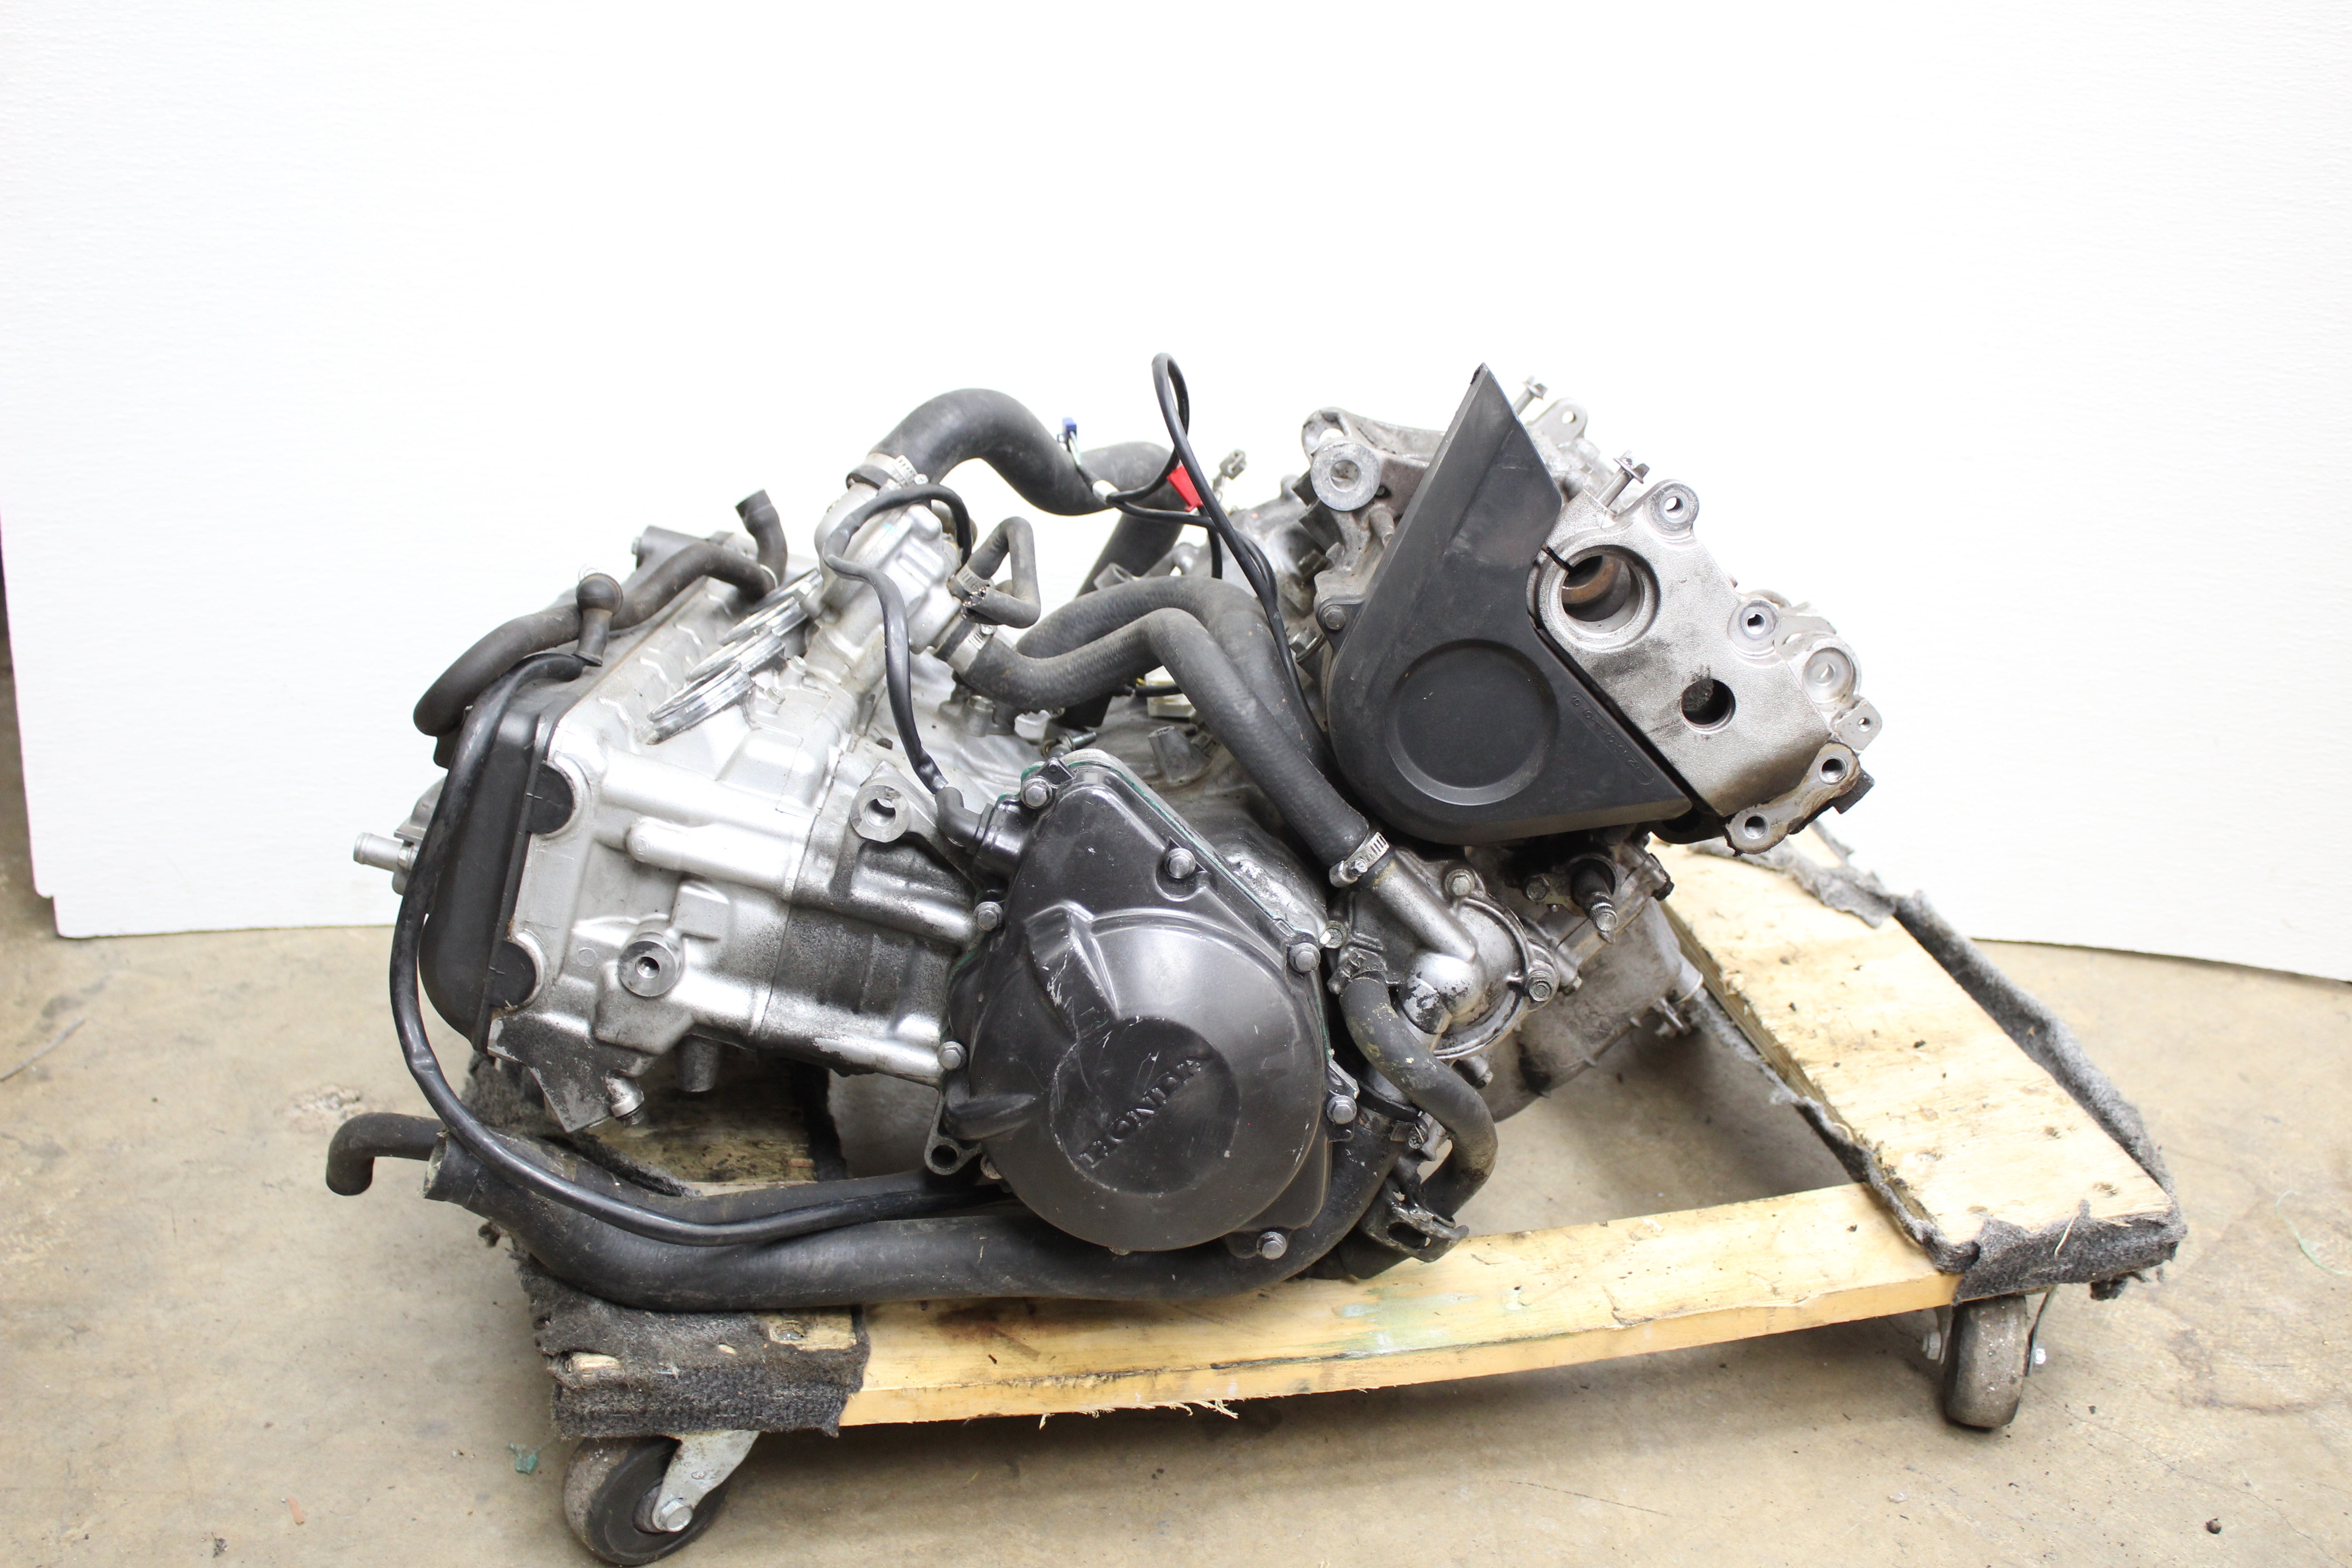 Honda OEM, Engine Motor Complete For Parts/Rebuild Honda CBR929RR 00-01 OEM